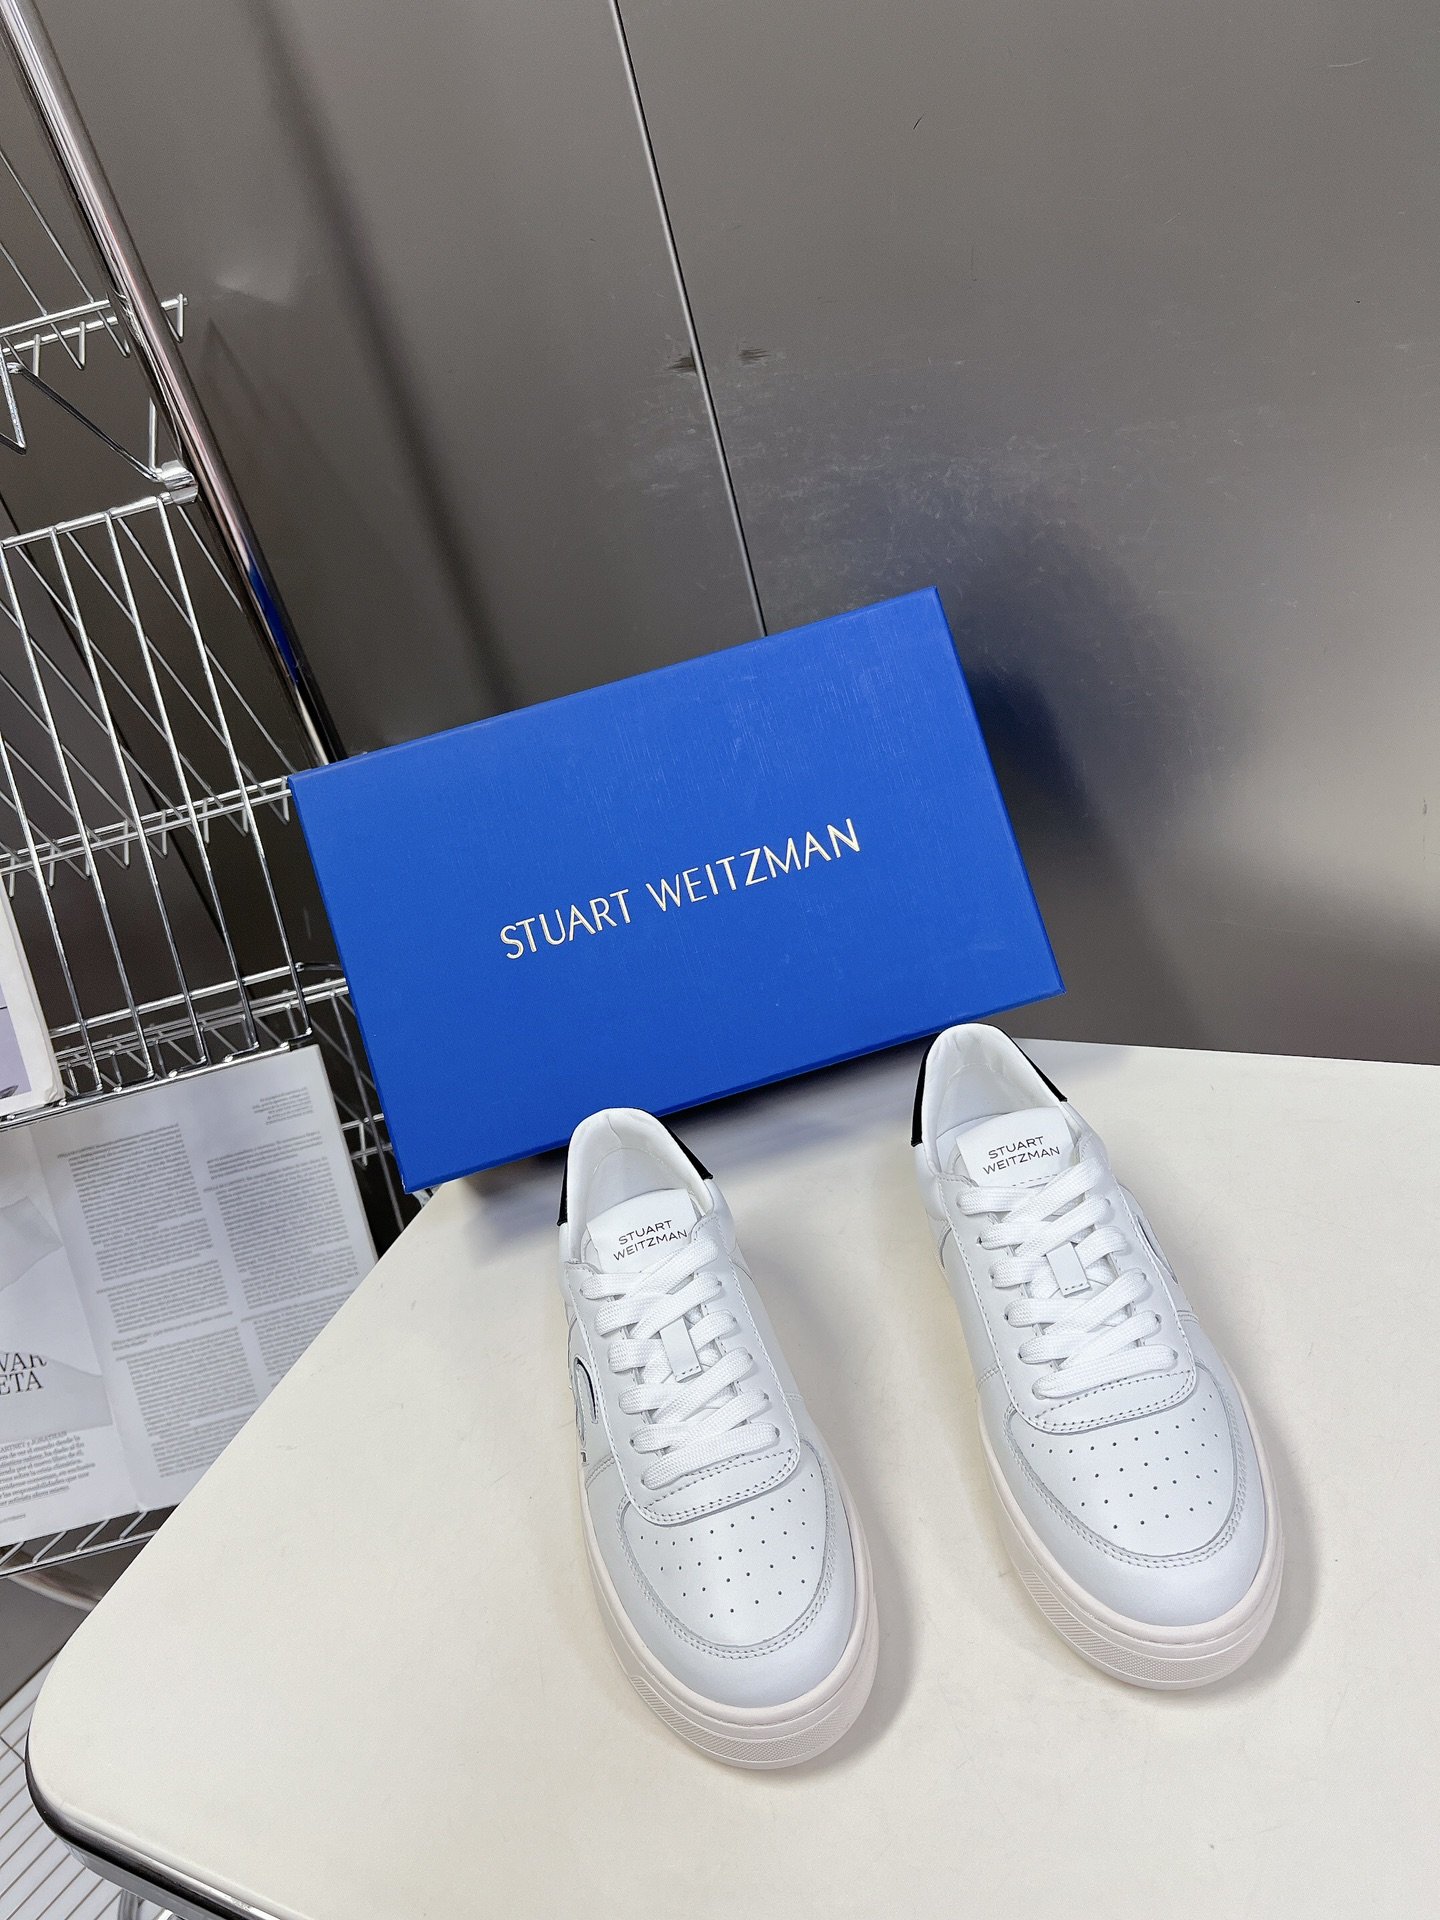 StuartWeitzman高版本SW低帮休闲运动鞋华丽焕新经典系带款小白鞋全新上线恩缇韦曼专门为女性量